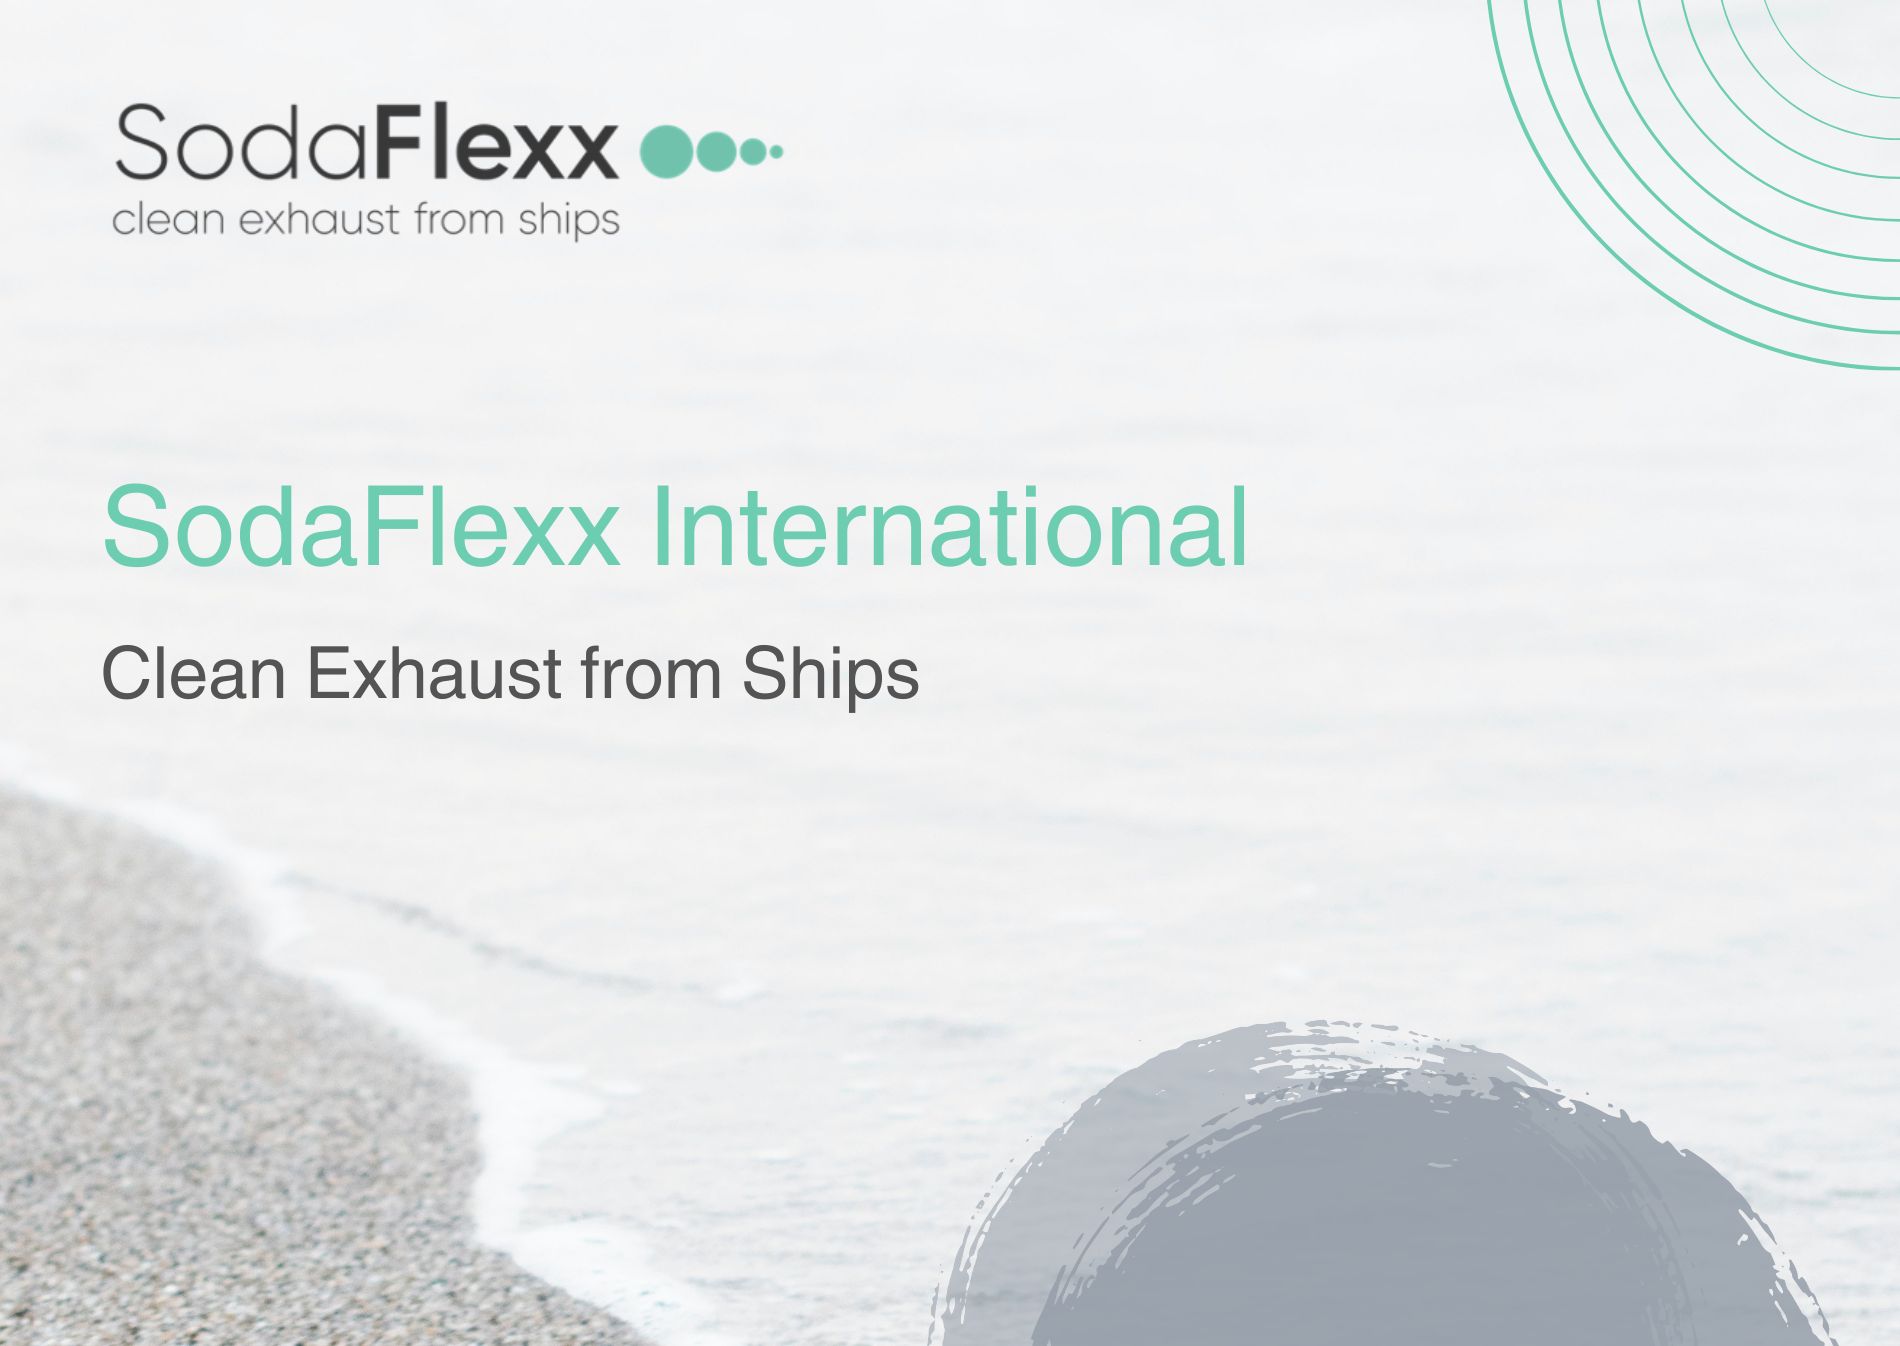 SodaFlexx International announces new brand following restructure